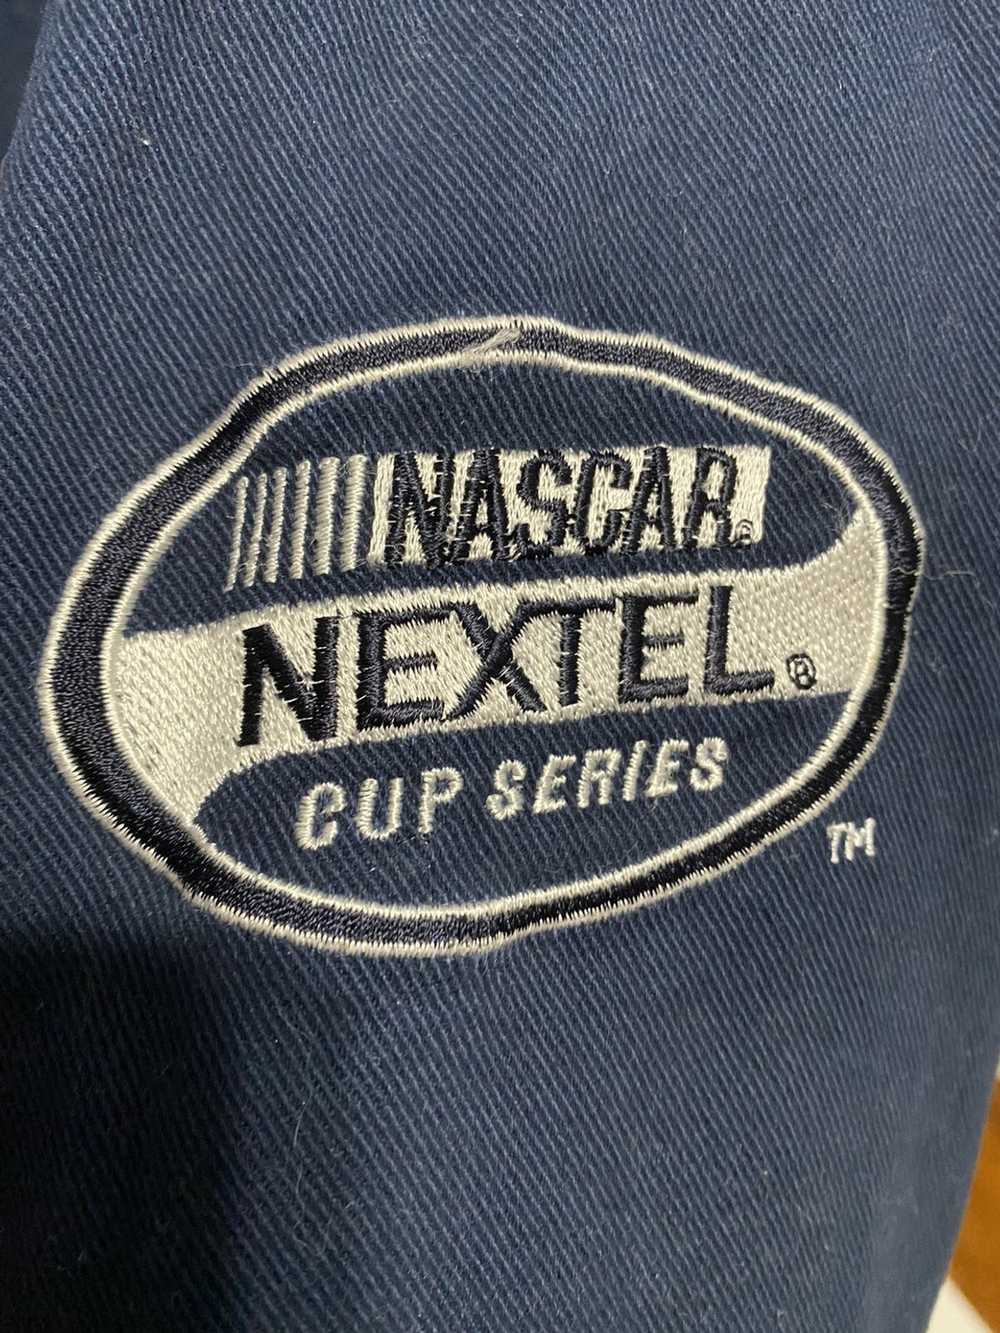 Budweiser × NASCAR Vintage NASCAR Racing Jacket - image 4